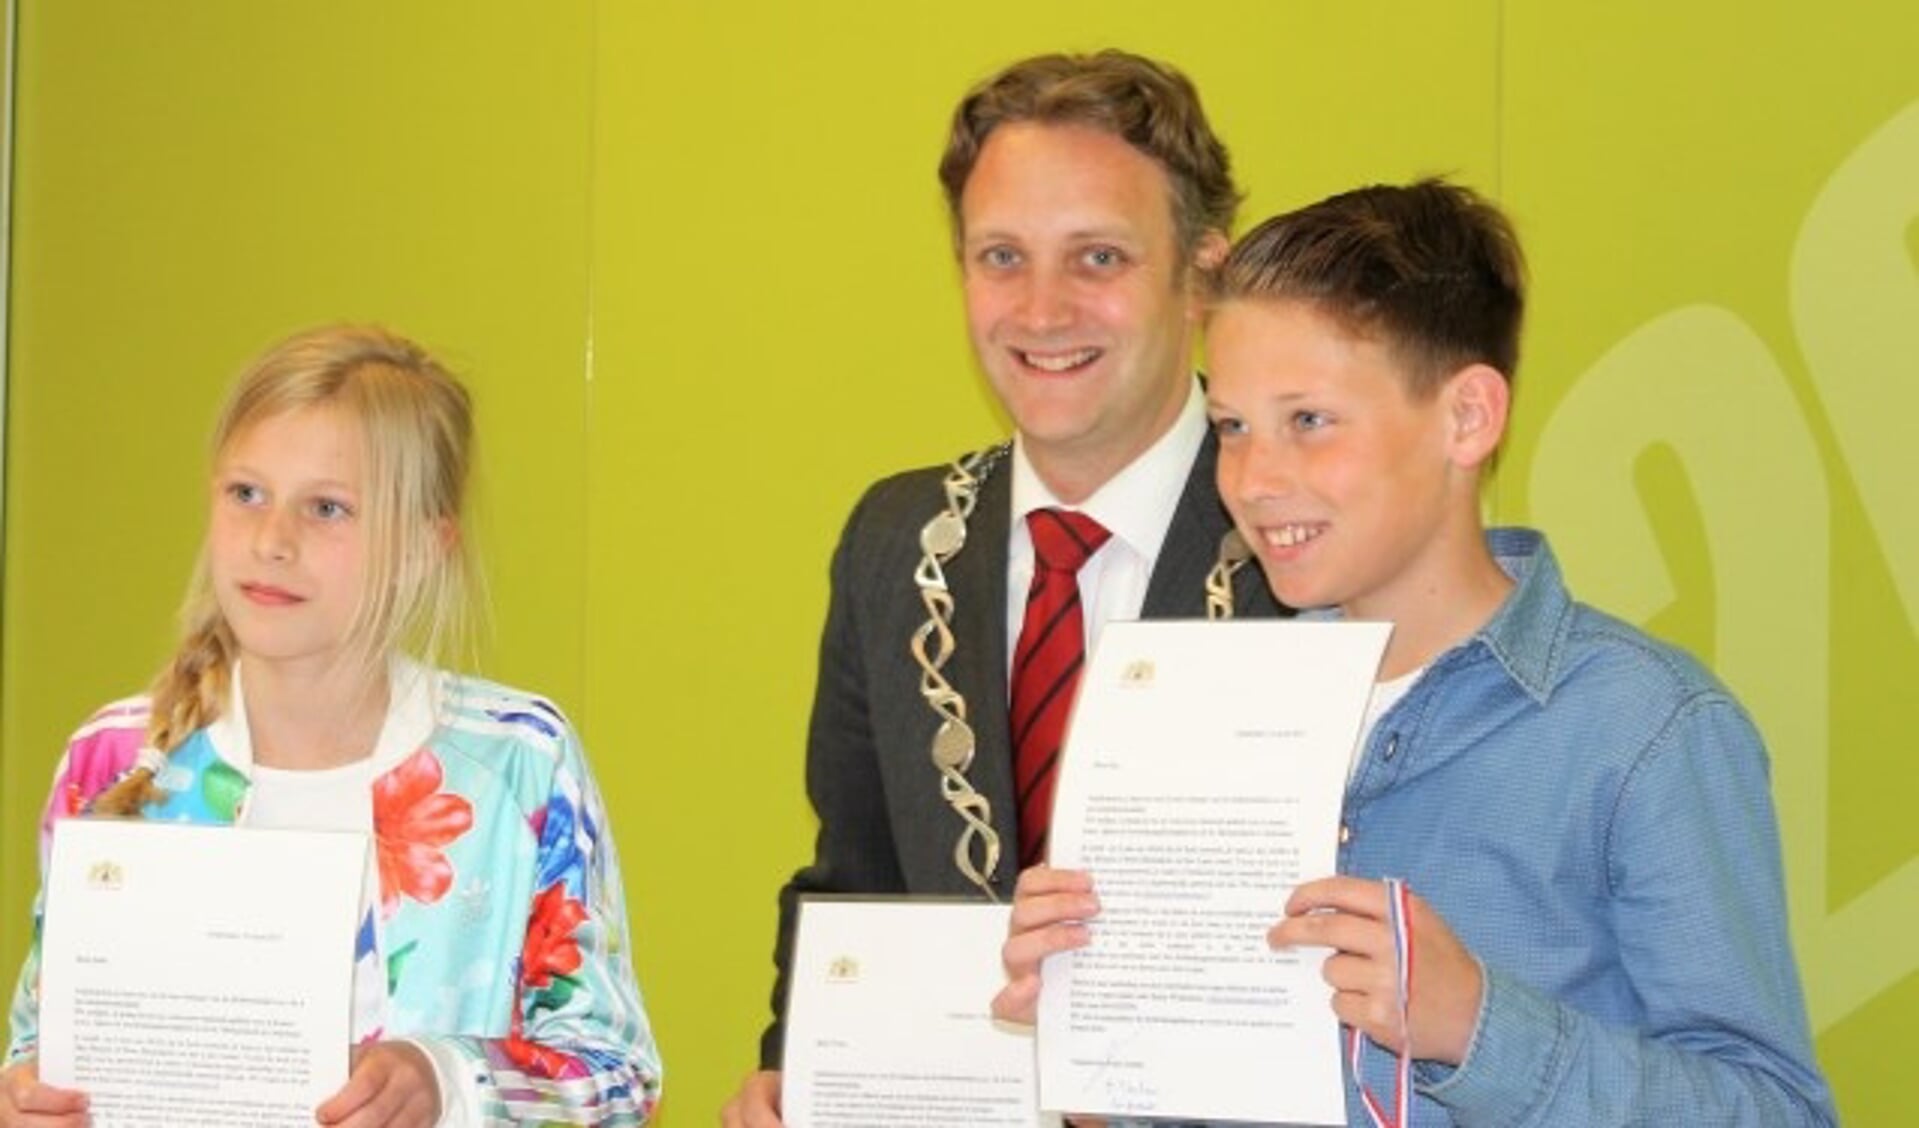 De winnaars van de gedichtenwedstrijd  Julia Brouwer en Kas Verkleij met burgemeester Pieter Verhoeve. (Foto: Gerard van Hooff)